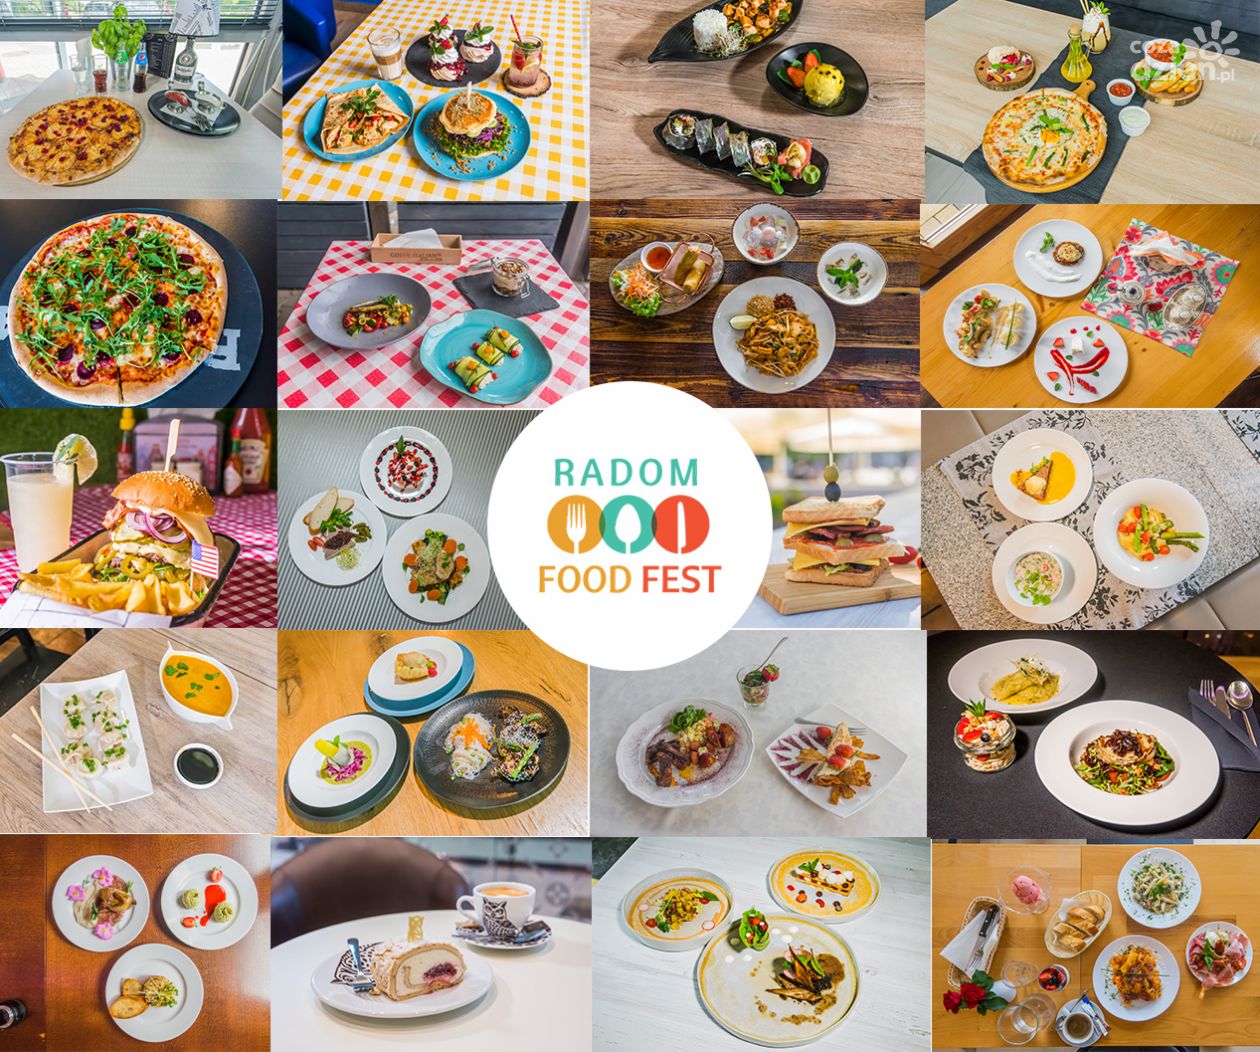 Radom Food Fest: Trwa głosowanie. Zagłosuj na swoje ulubione dania